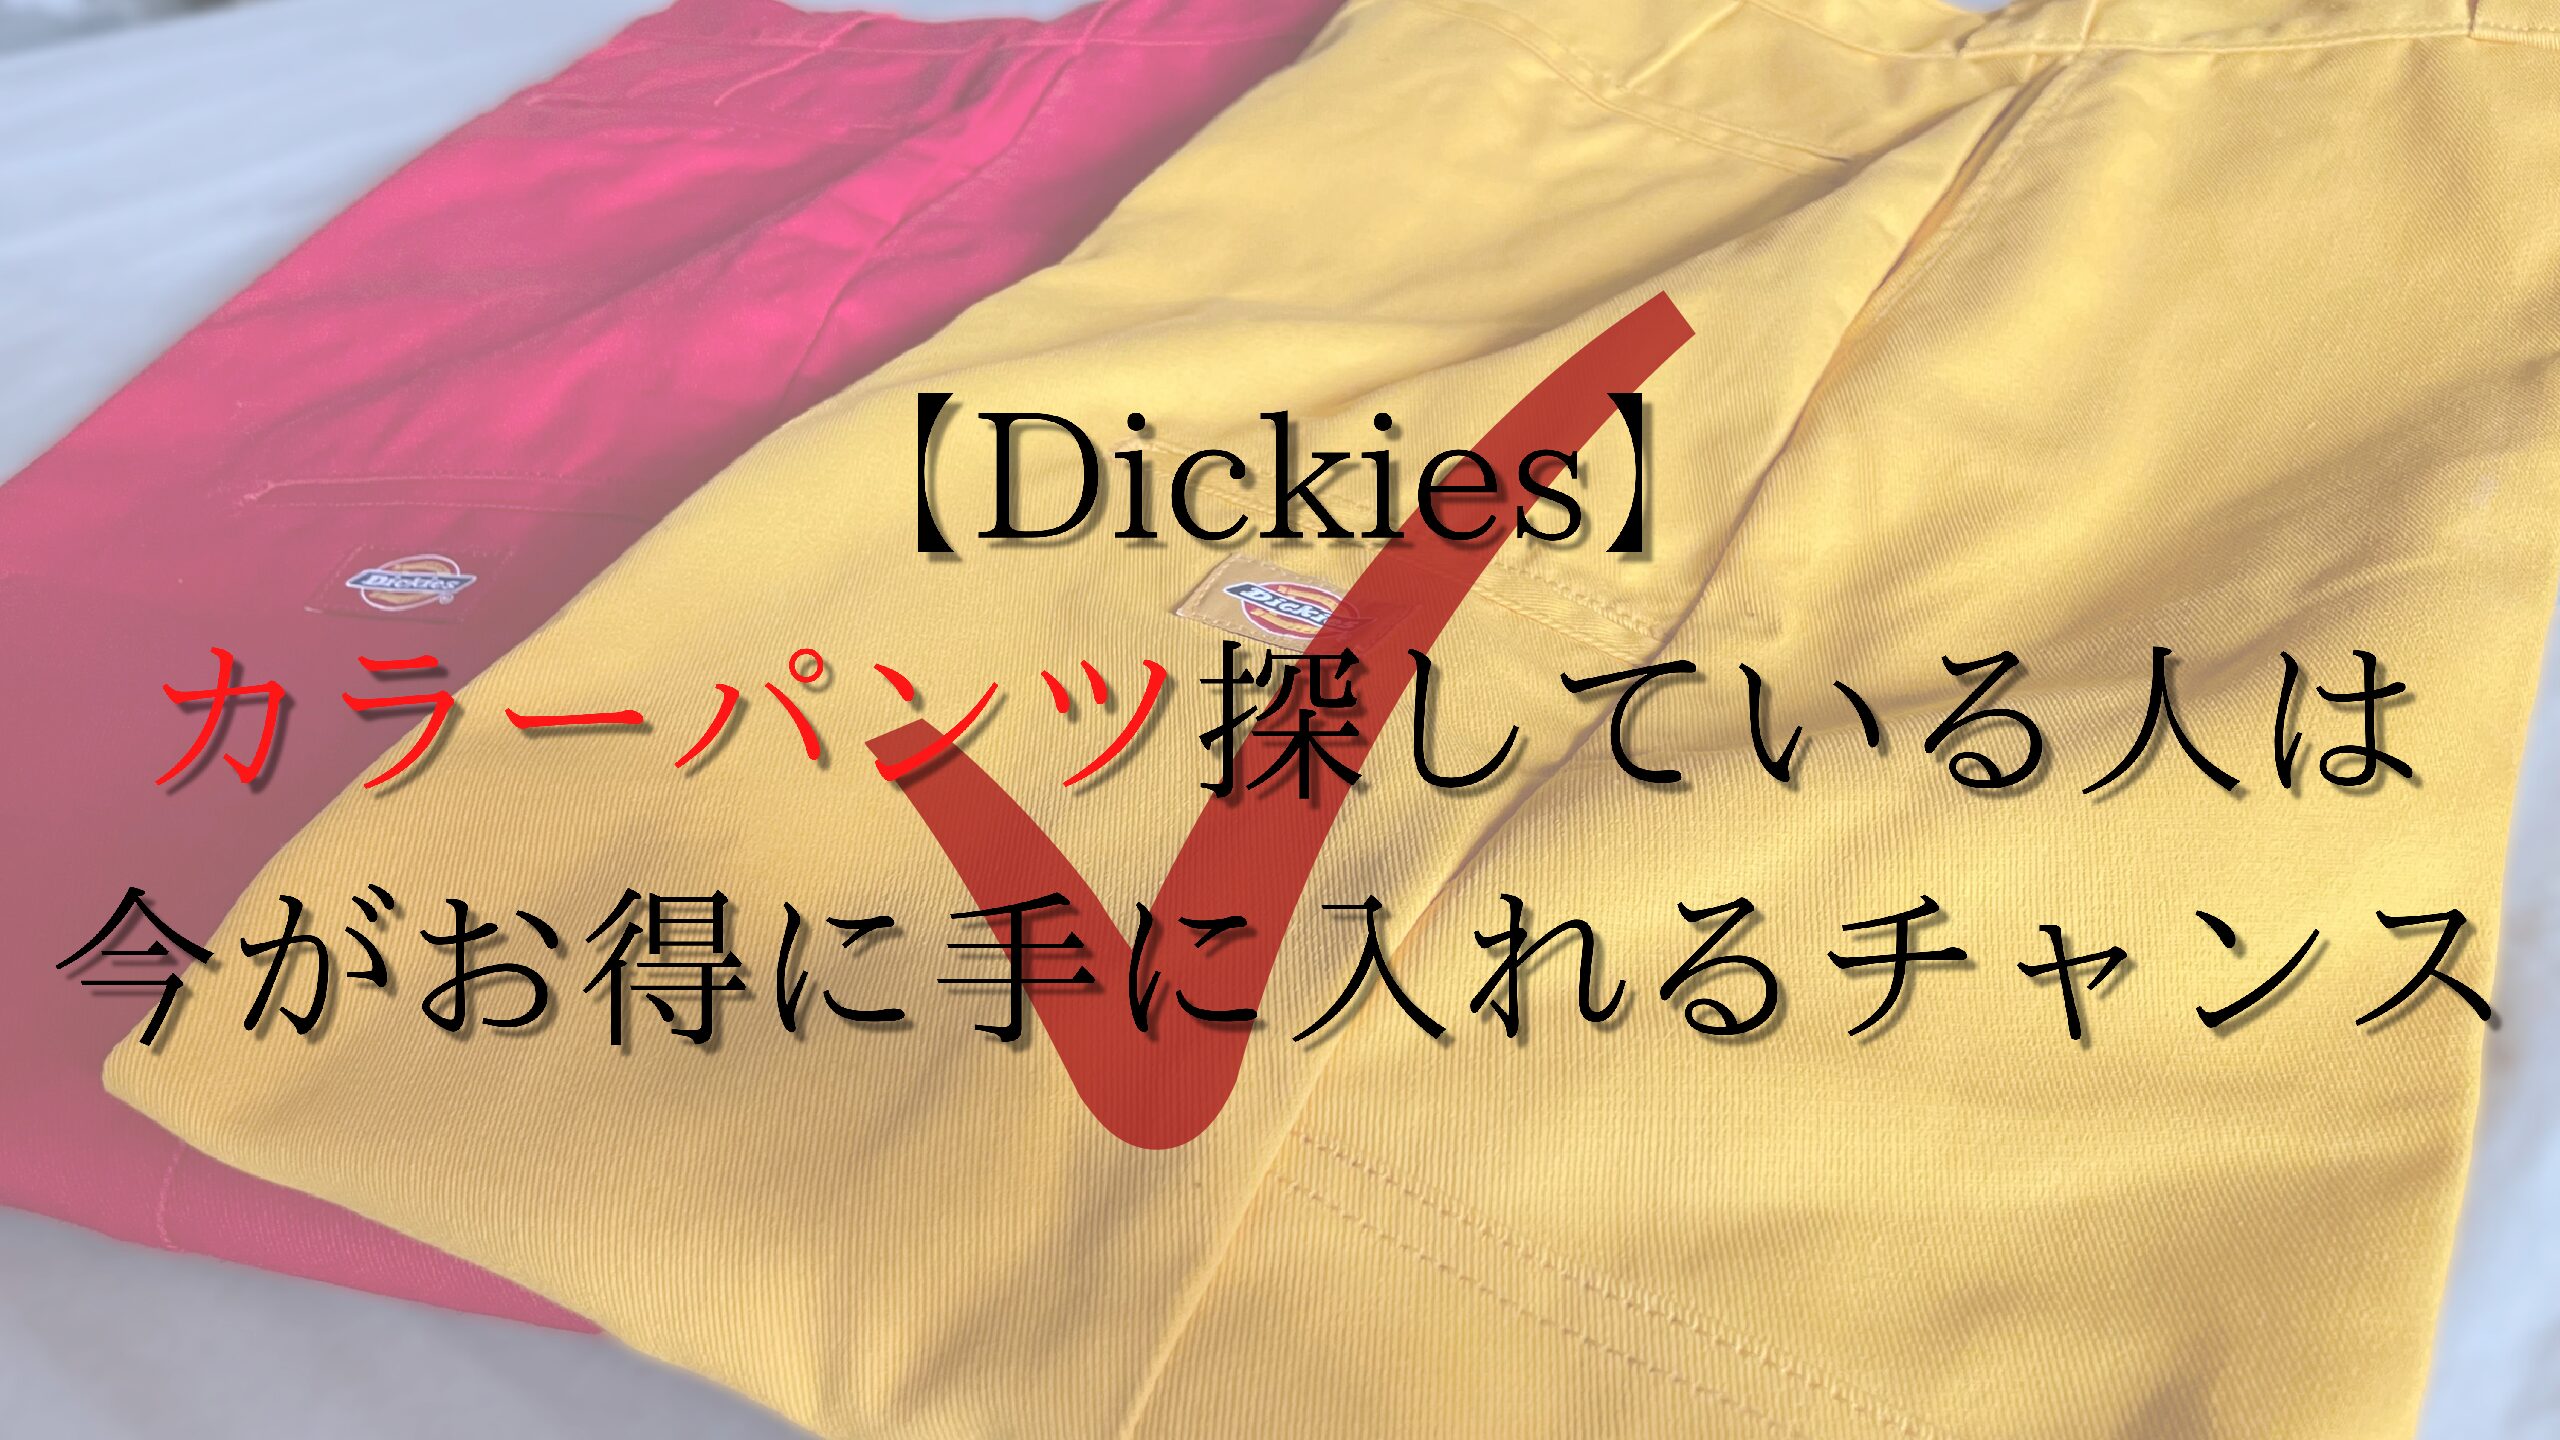 【Dickies】カラーパンツ探している人は今がお得に手に入れるチャンス